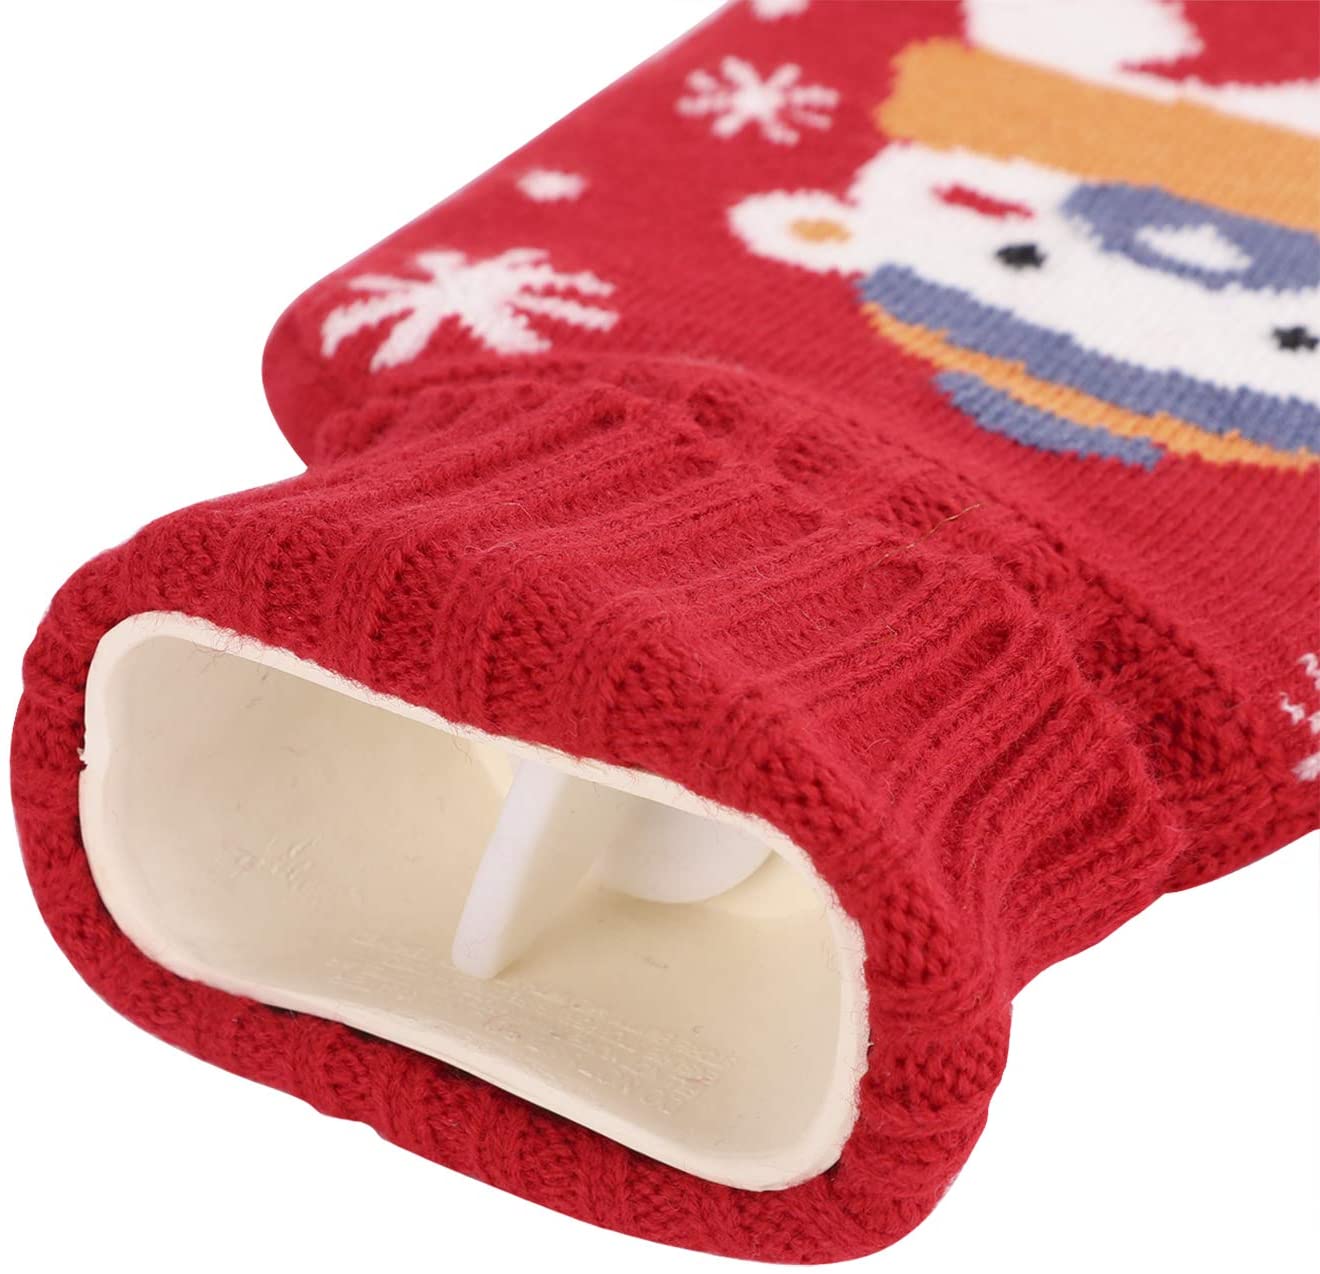 Sac chauffant en caoutchouc durable avec housse en tricot pour les crampes menstruelles